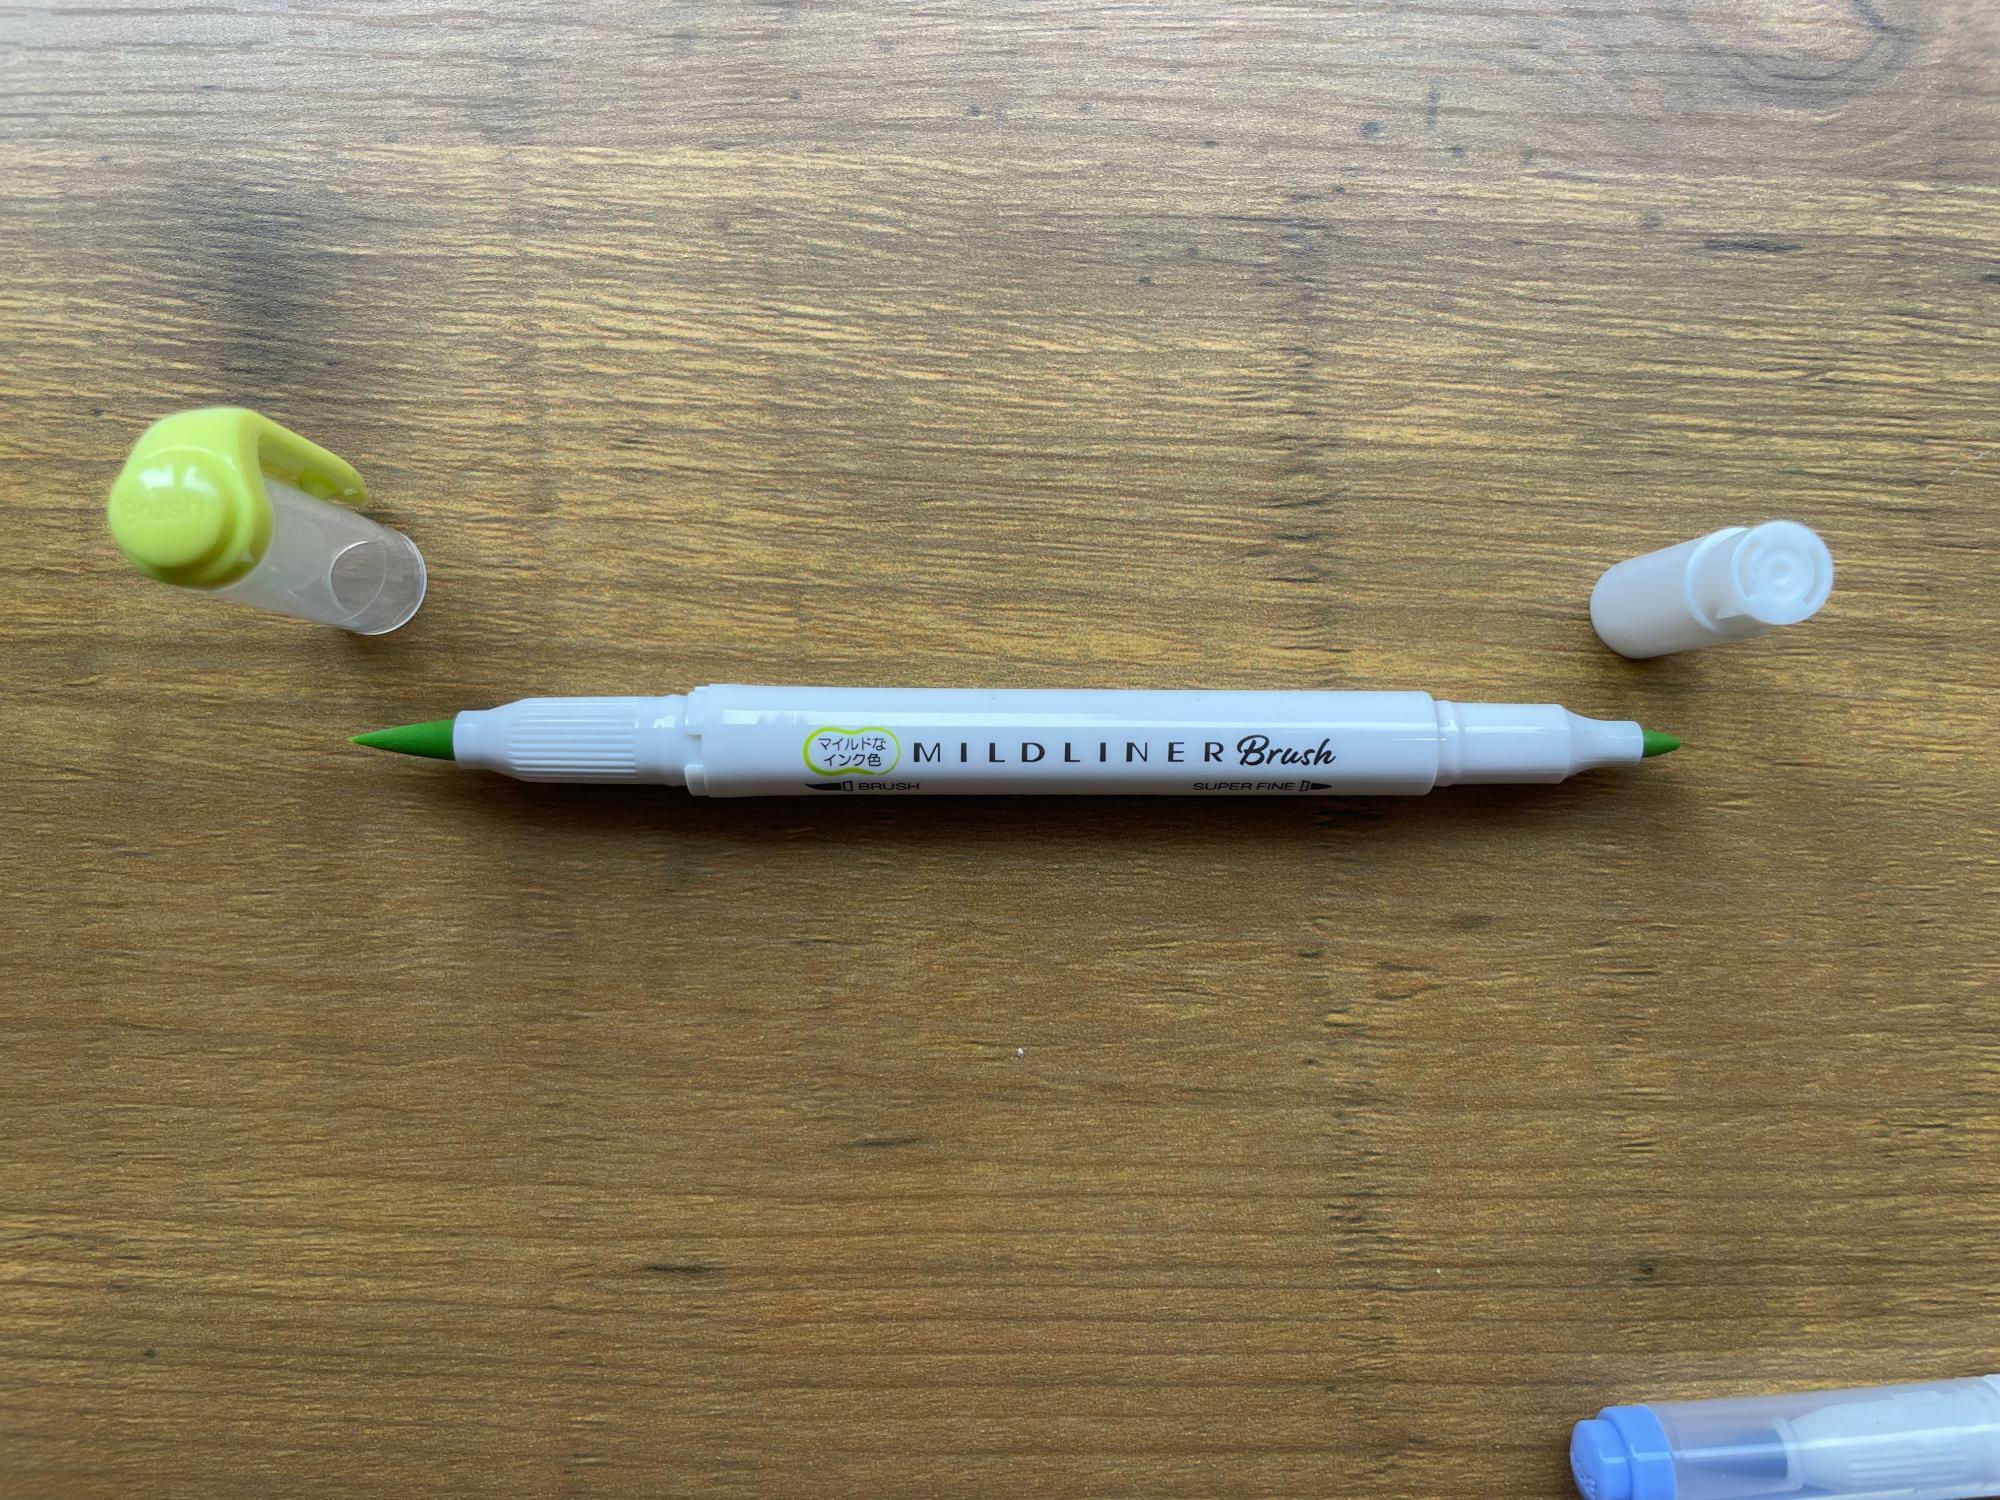 両端にペン先がある。書いたときの太さが異なる